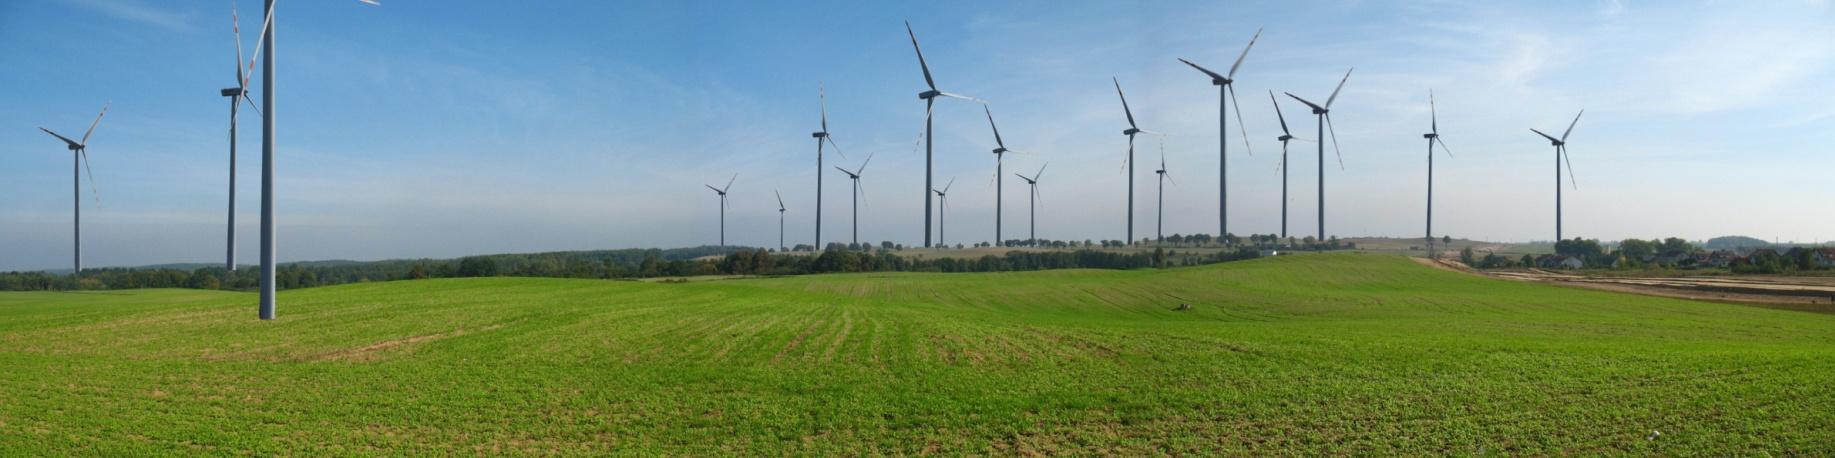 Symulacje krajobrazowe planowanej farmy wiatrowej Pelplin II, autor Biuro Projektów i Wdrożeń Proekologicznych Proeko w Gdańsku (2010) źródło: prognoza oddziaływania na